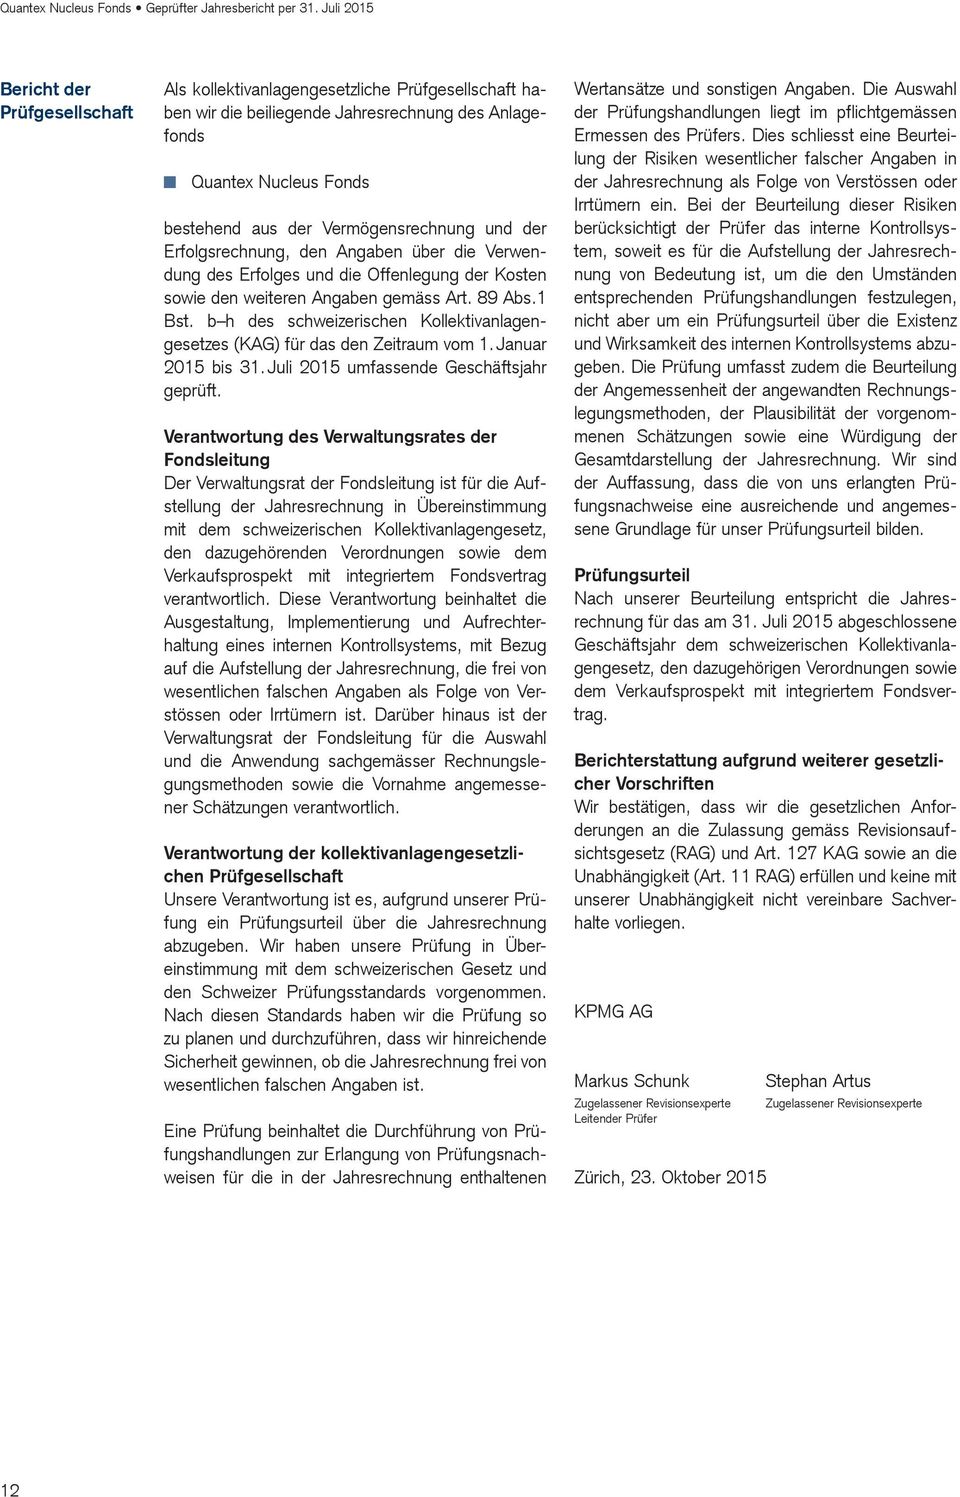 b h des schweizerischen Kollektivanlagengesetzes (KAG) für das den Zeitraum vom 1. Januar 2015 bis 31. Juli 2015 umfassende Geschäftsjahr geprüft.